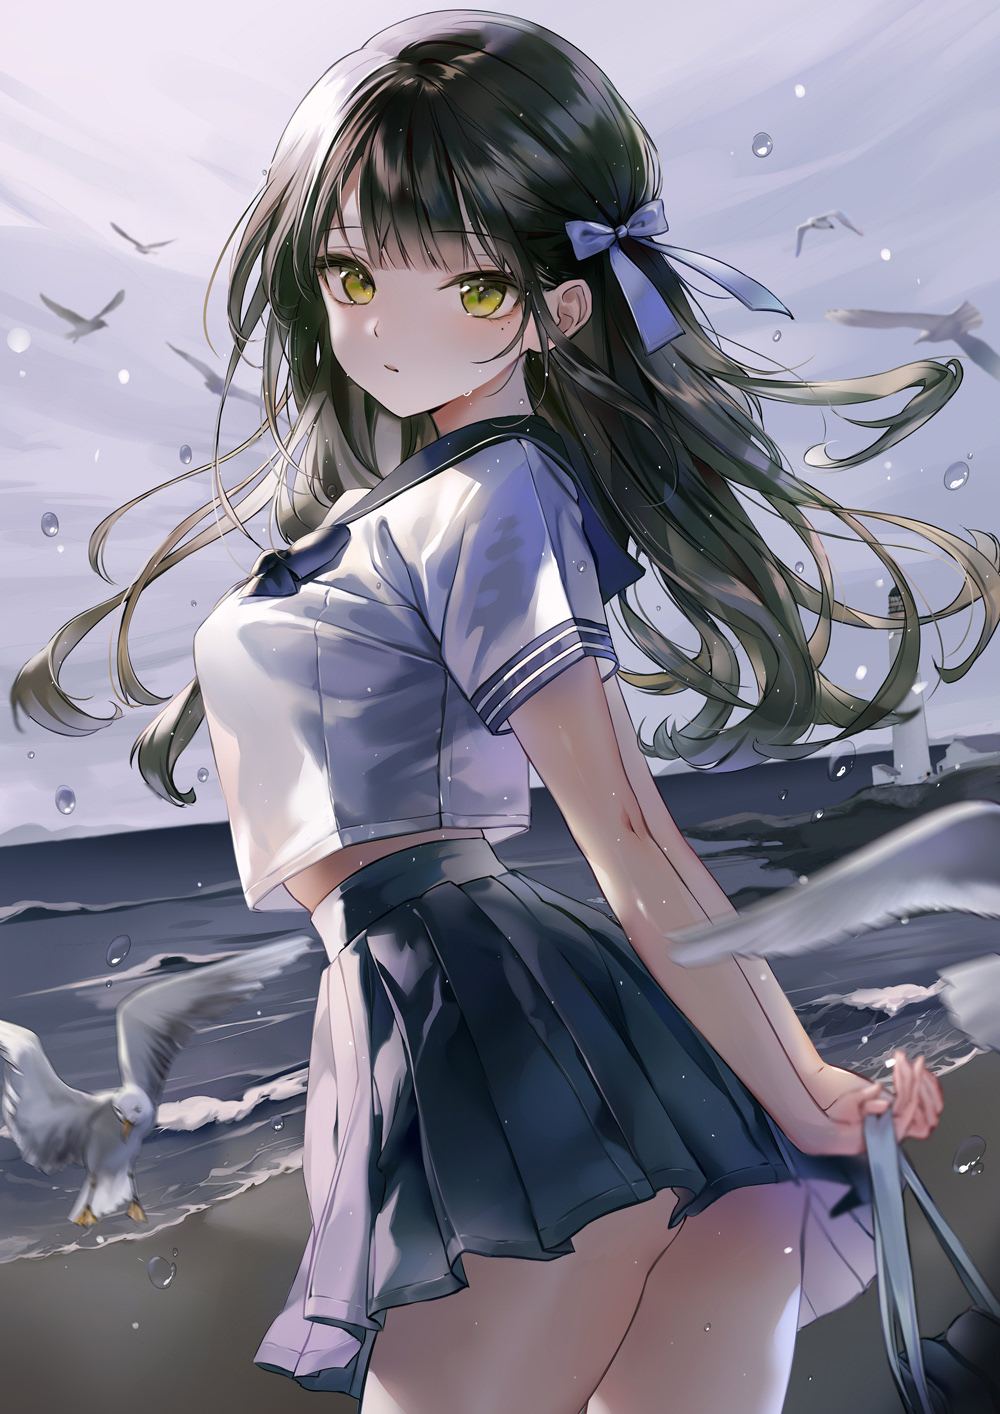 School Girls Anime Girl Poster | eBay